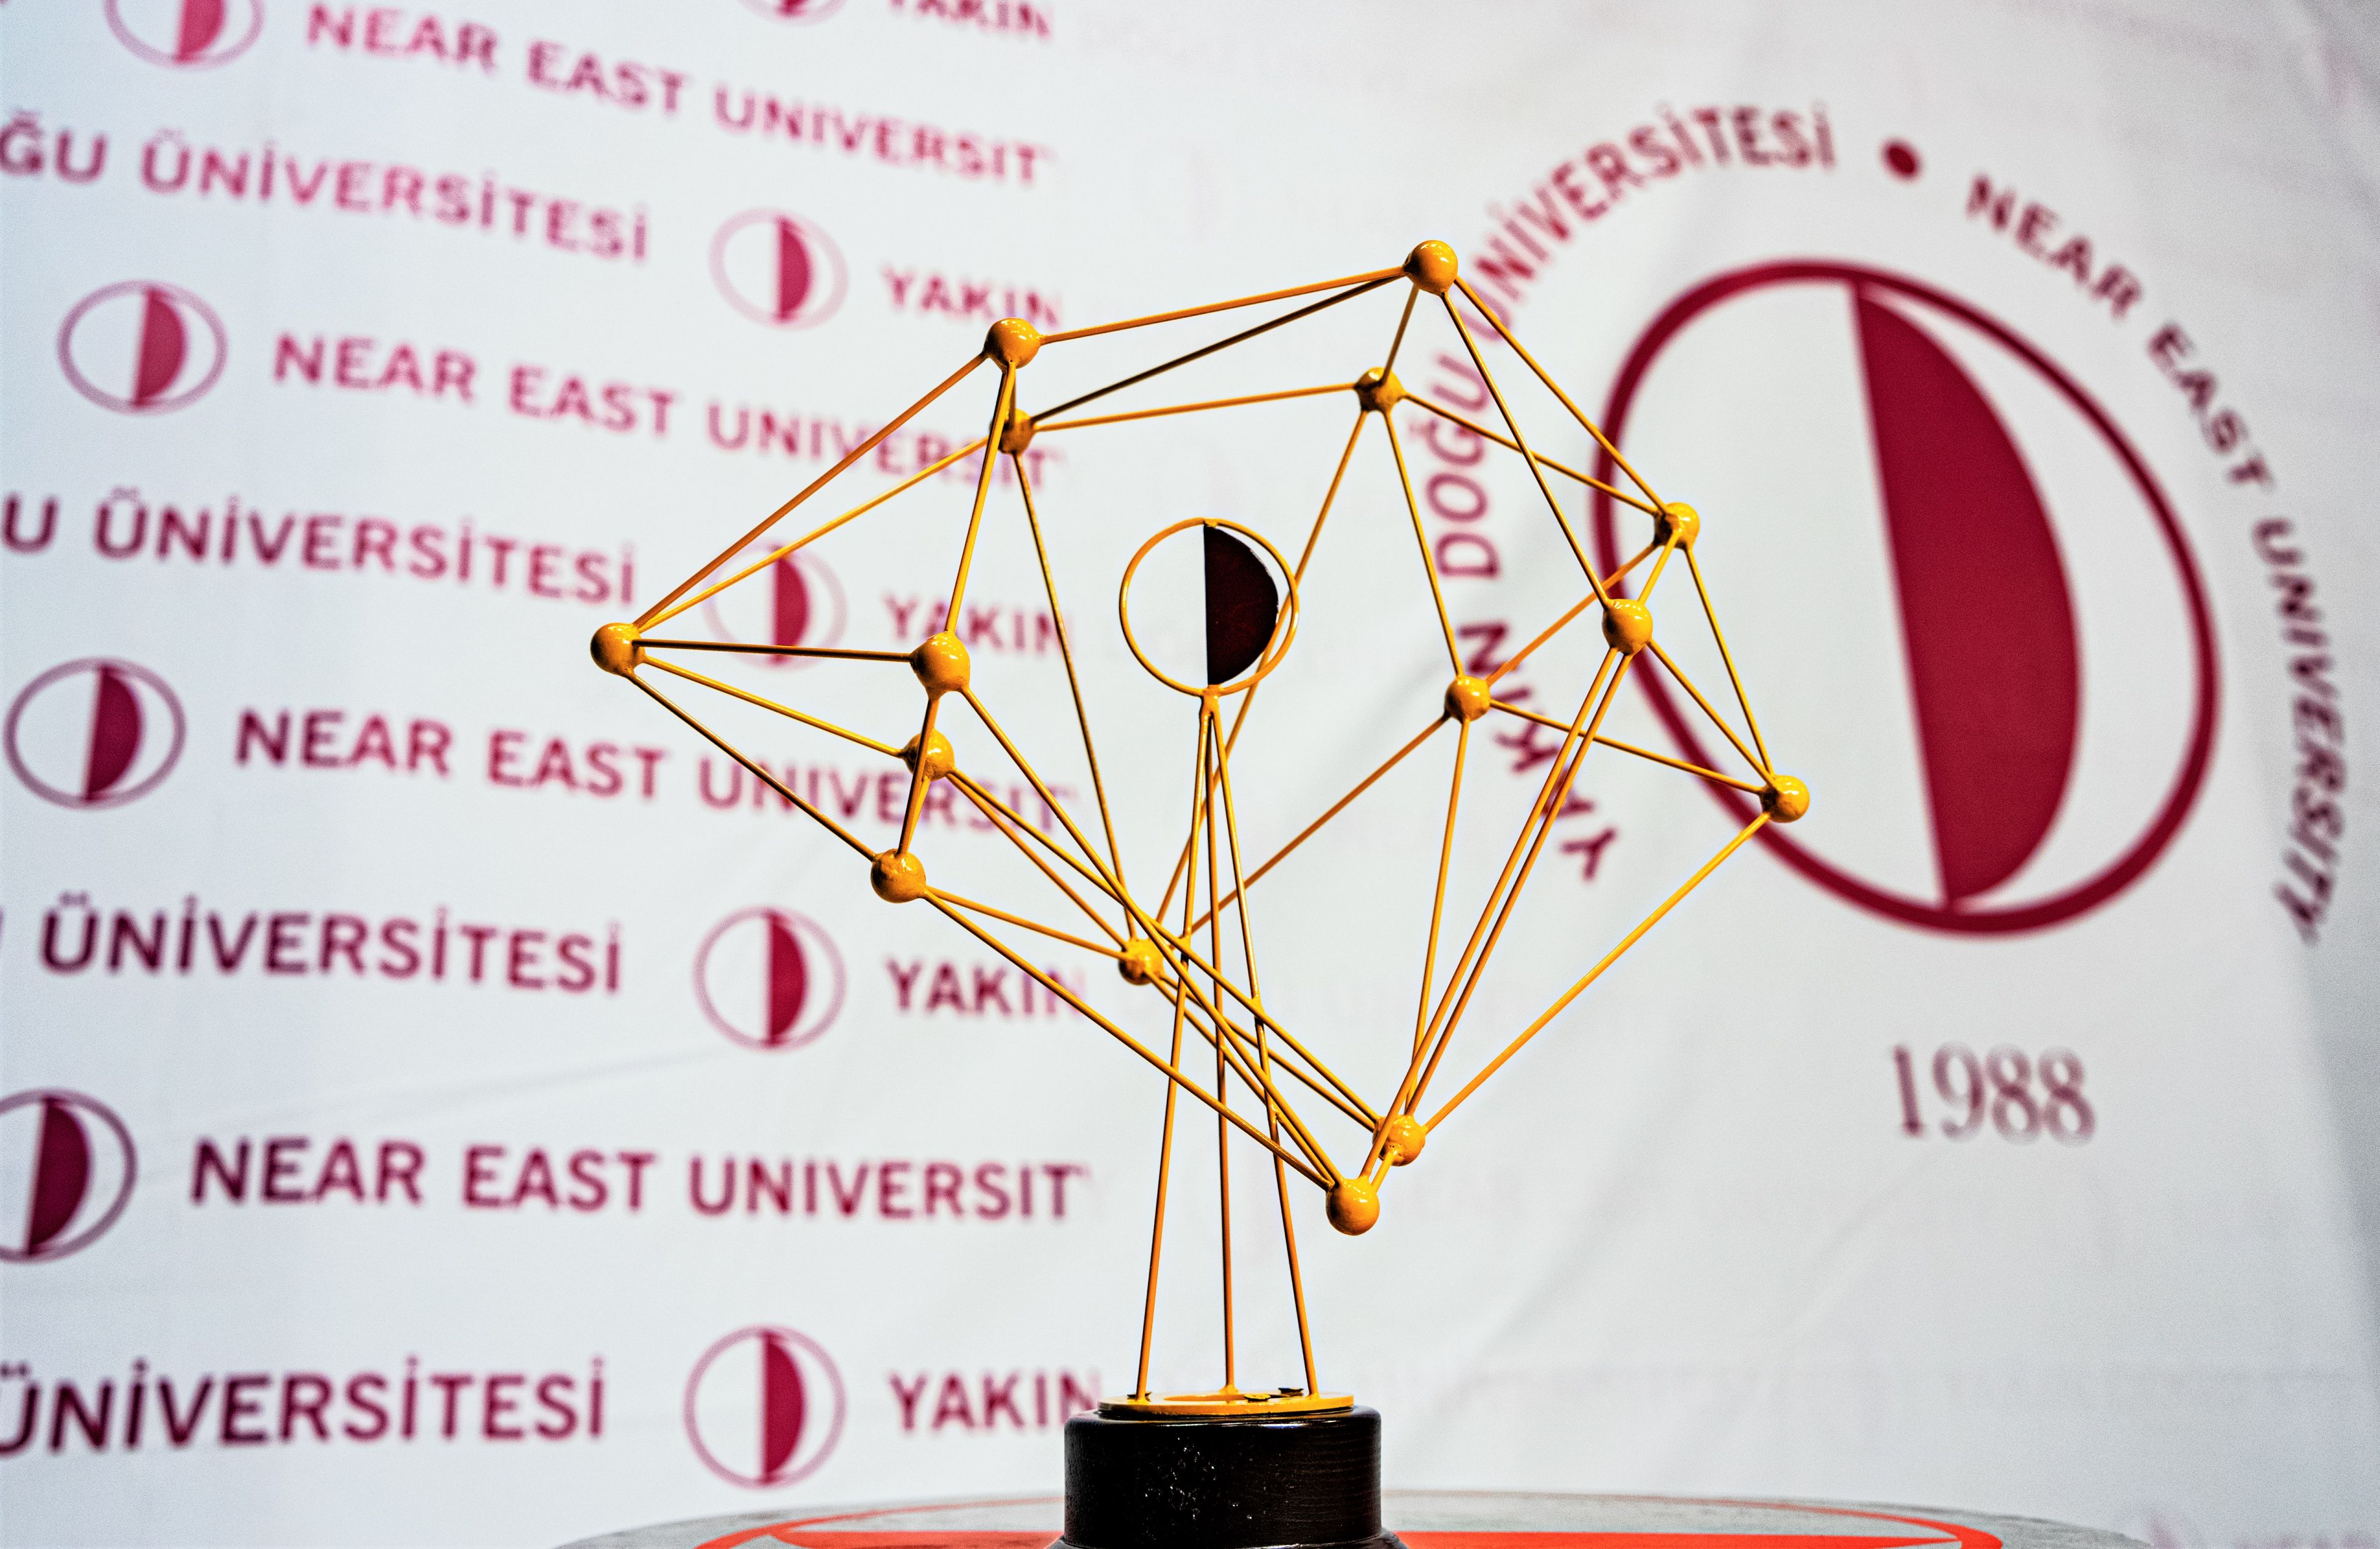 YDÜ Bilim Ödülleri, 25 Haziran’da düzenlenecek törenle sahiplerini bulacak